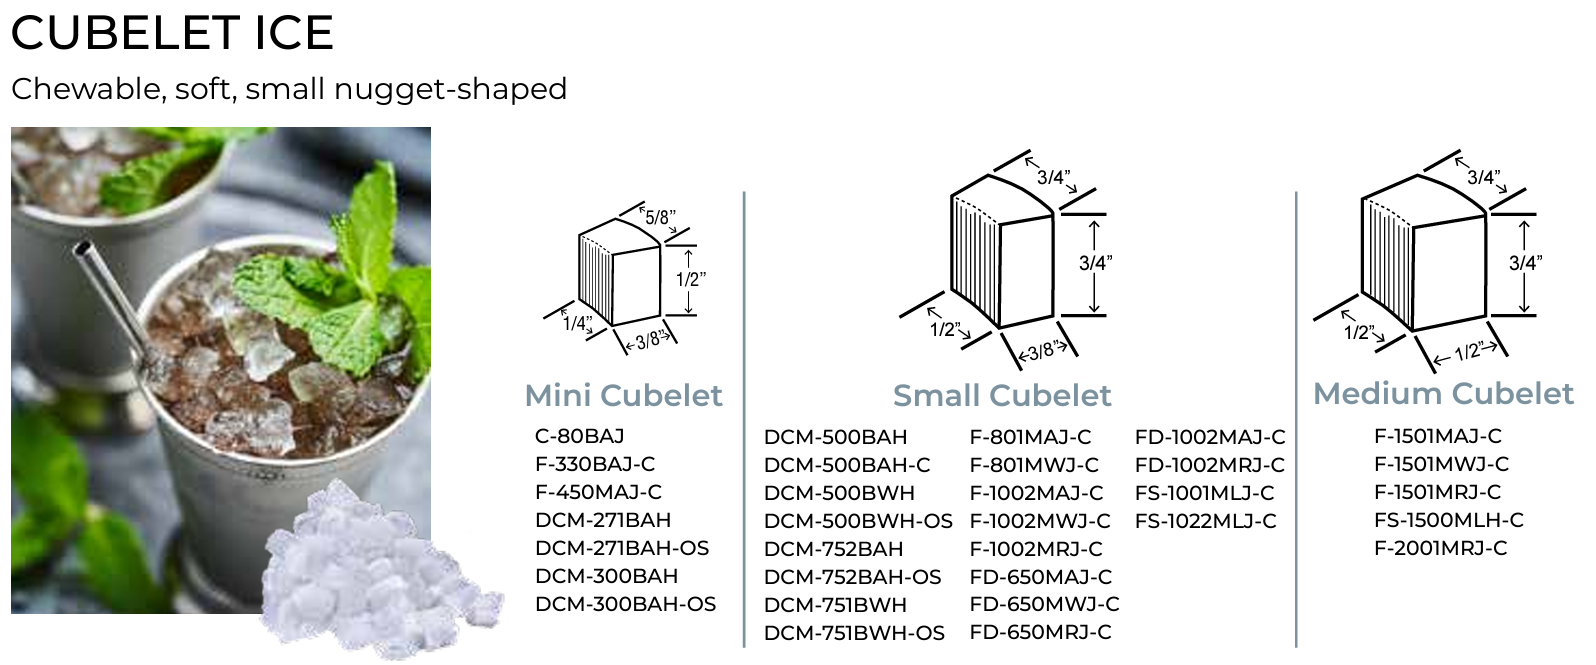 Hoshizaki FD-650M_J-C Cubelet Ice Maker